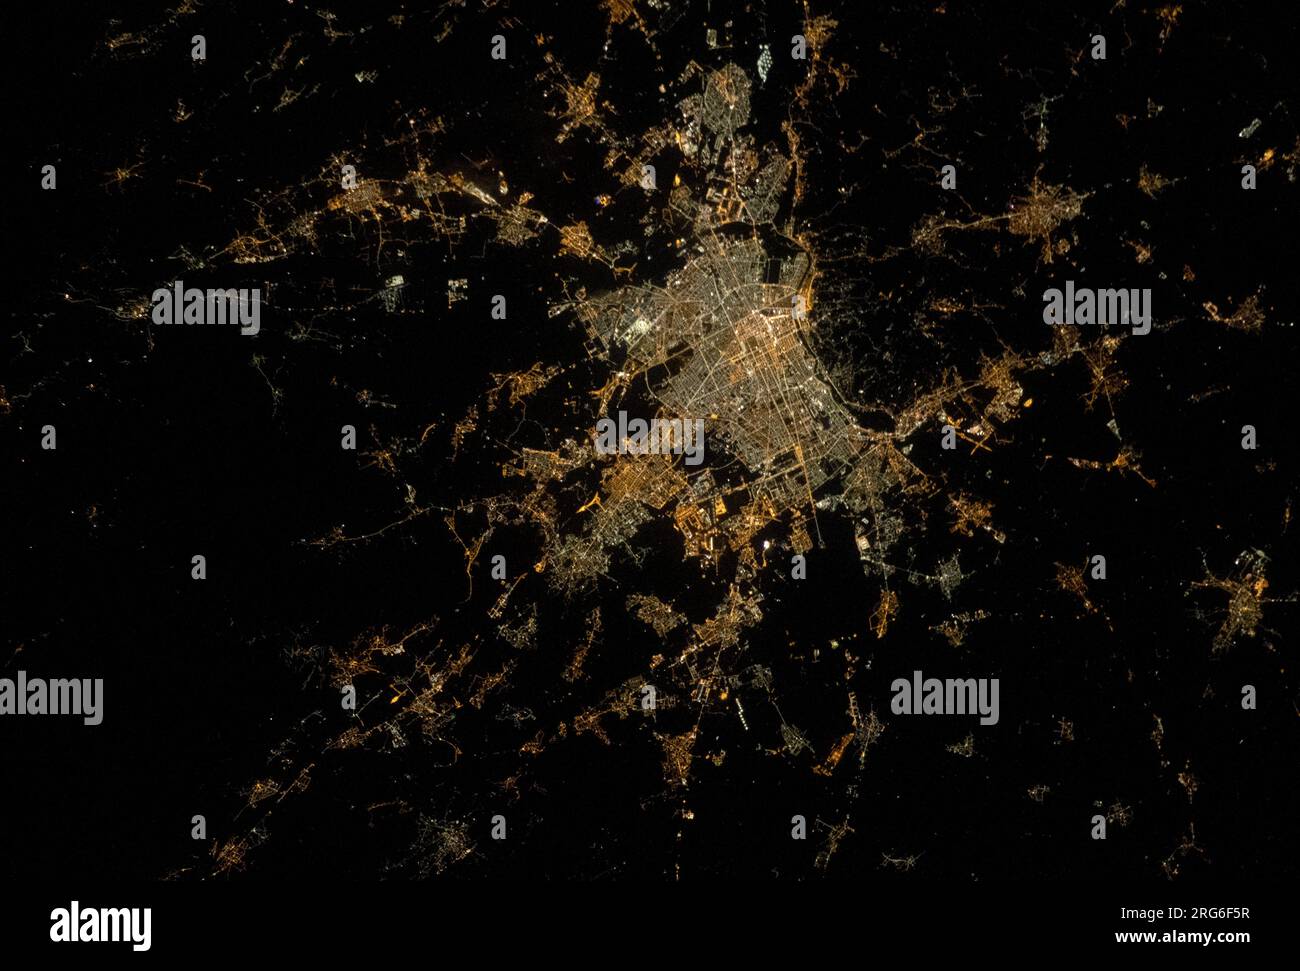 La città di Torino nell'Italia nord-occidentale di notte, presa dalla stazione spaziale Internazionale. Foto Stock